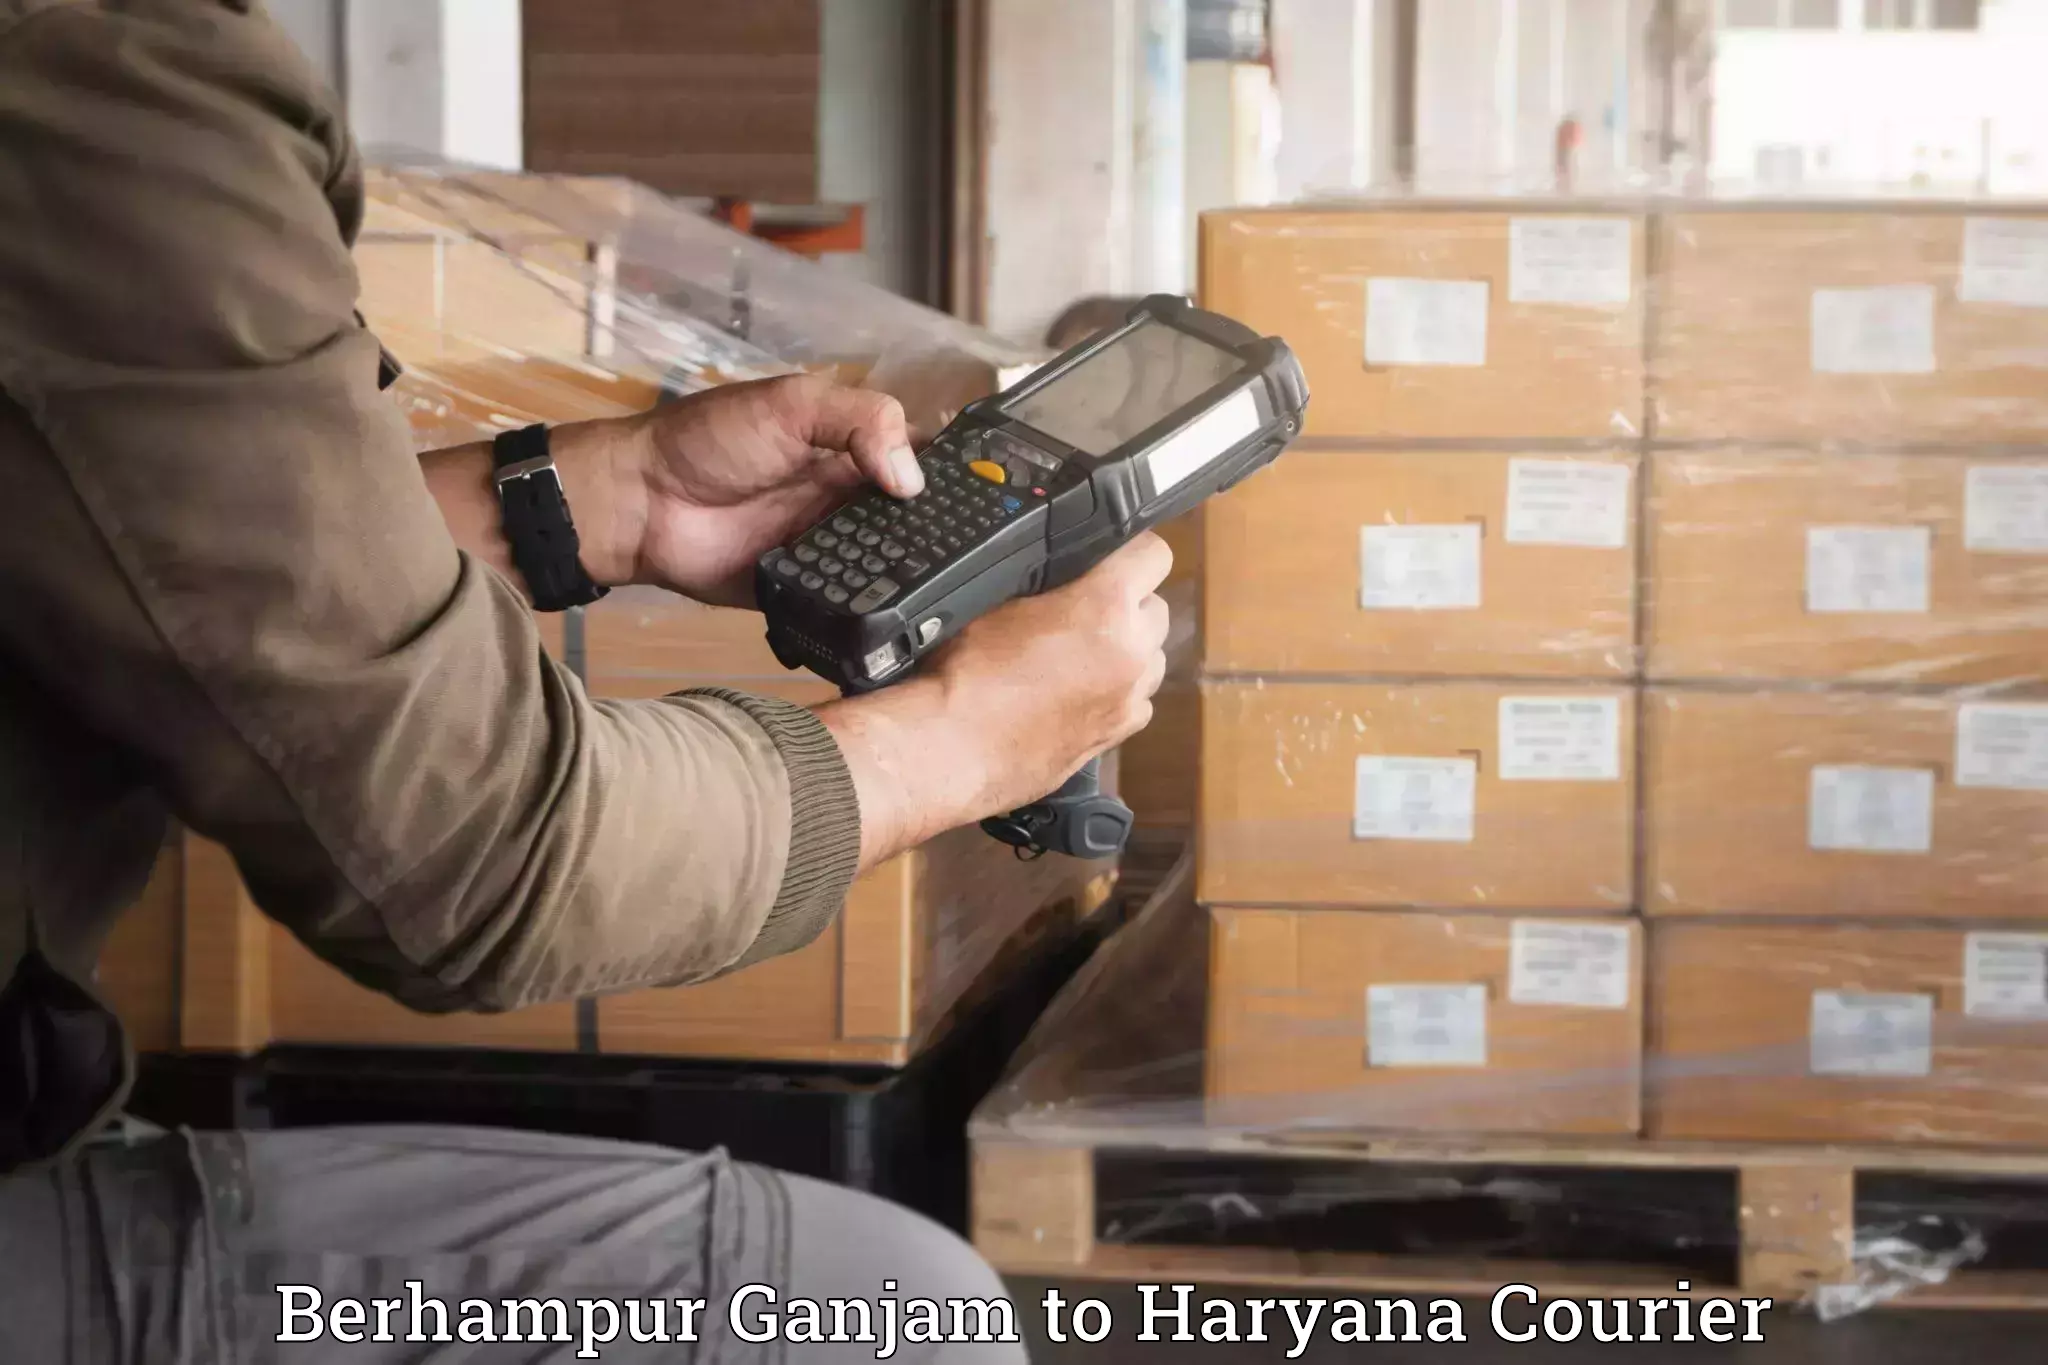 Household moving experts Berhampur Ganjam to Haryana